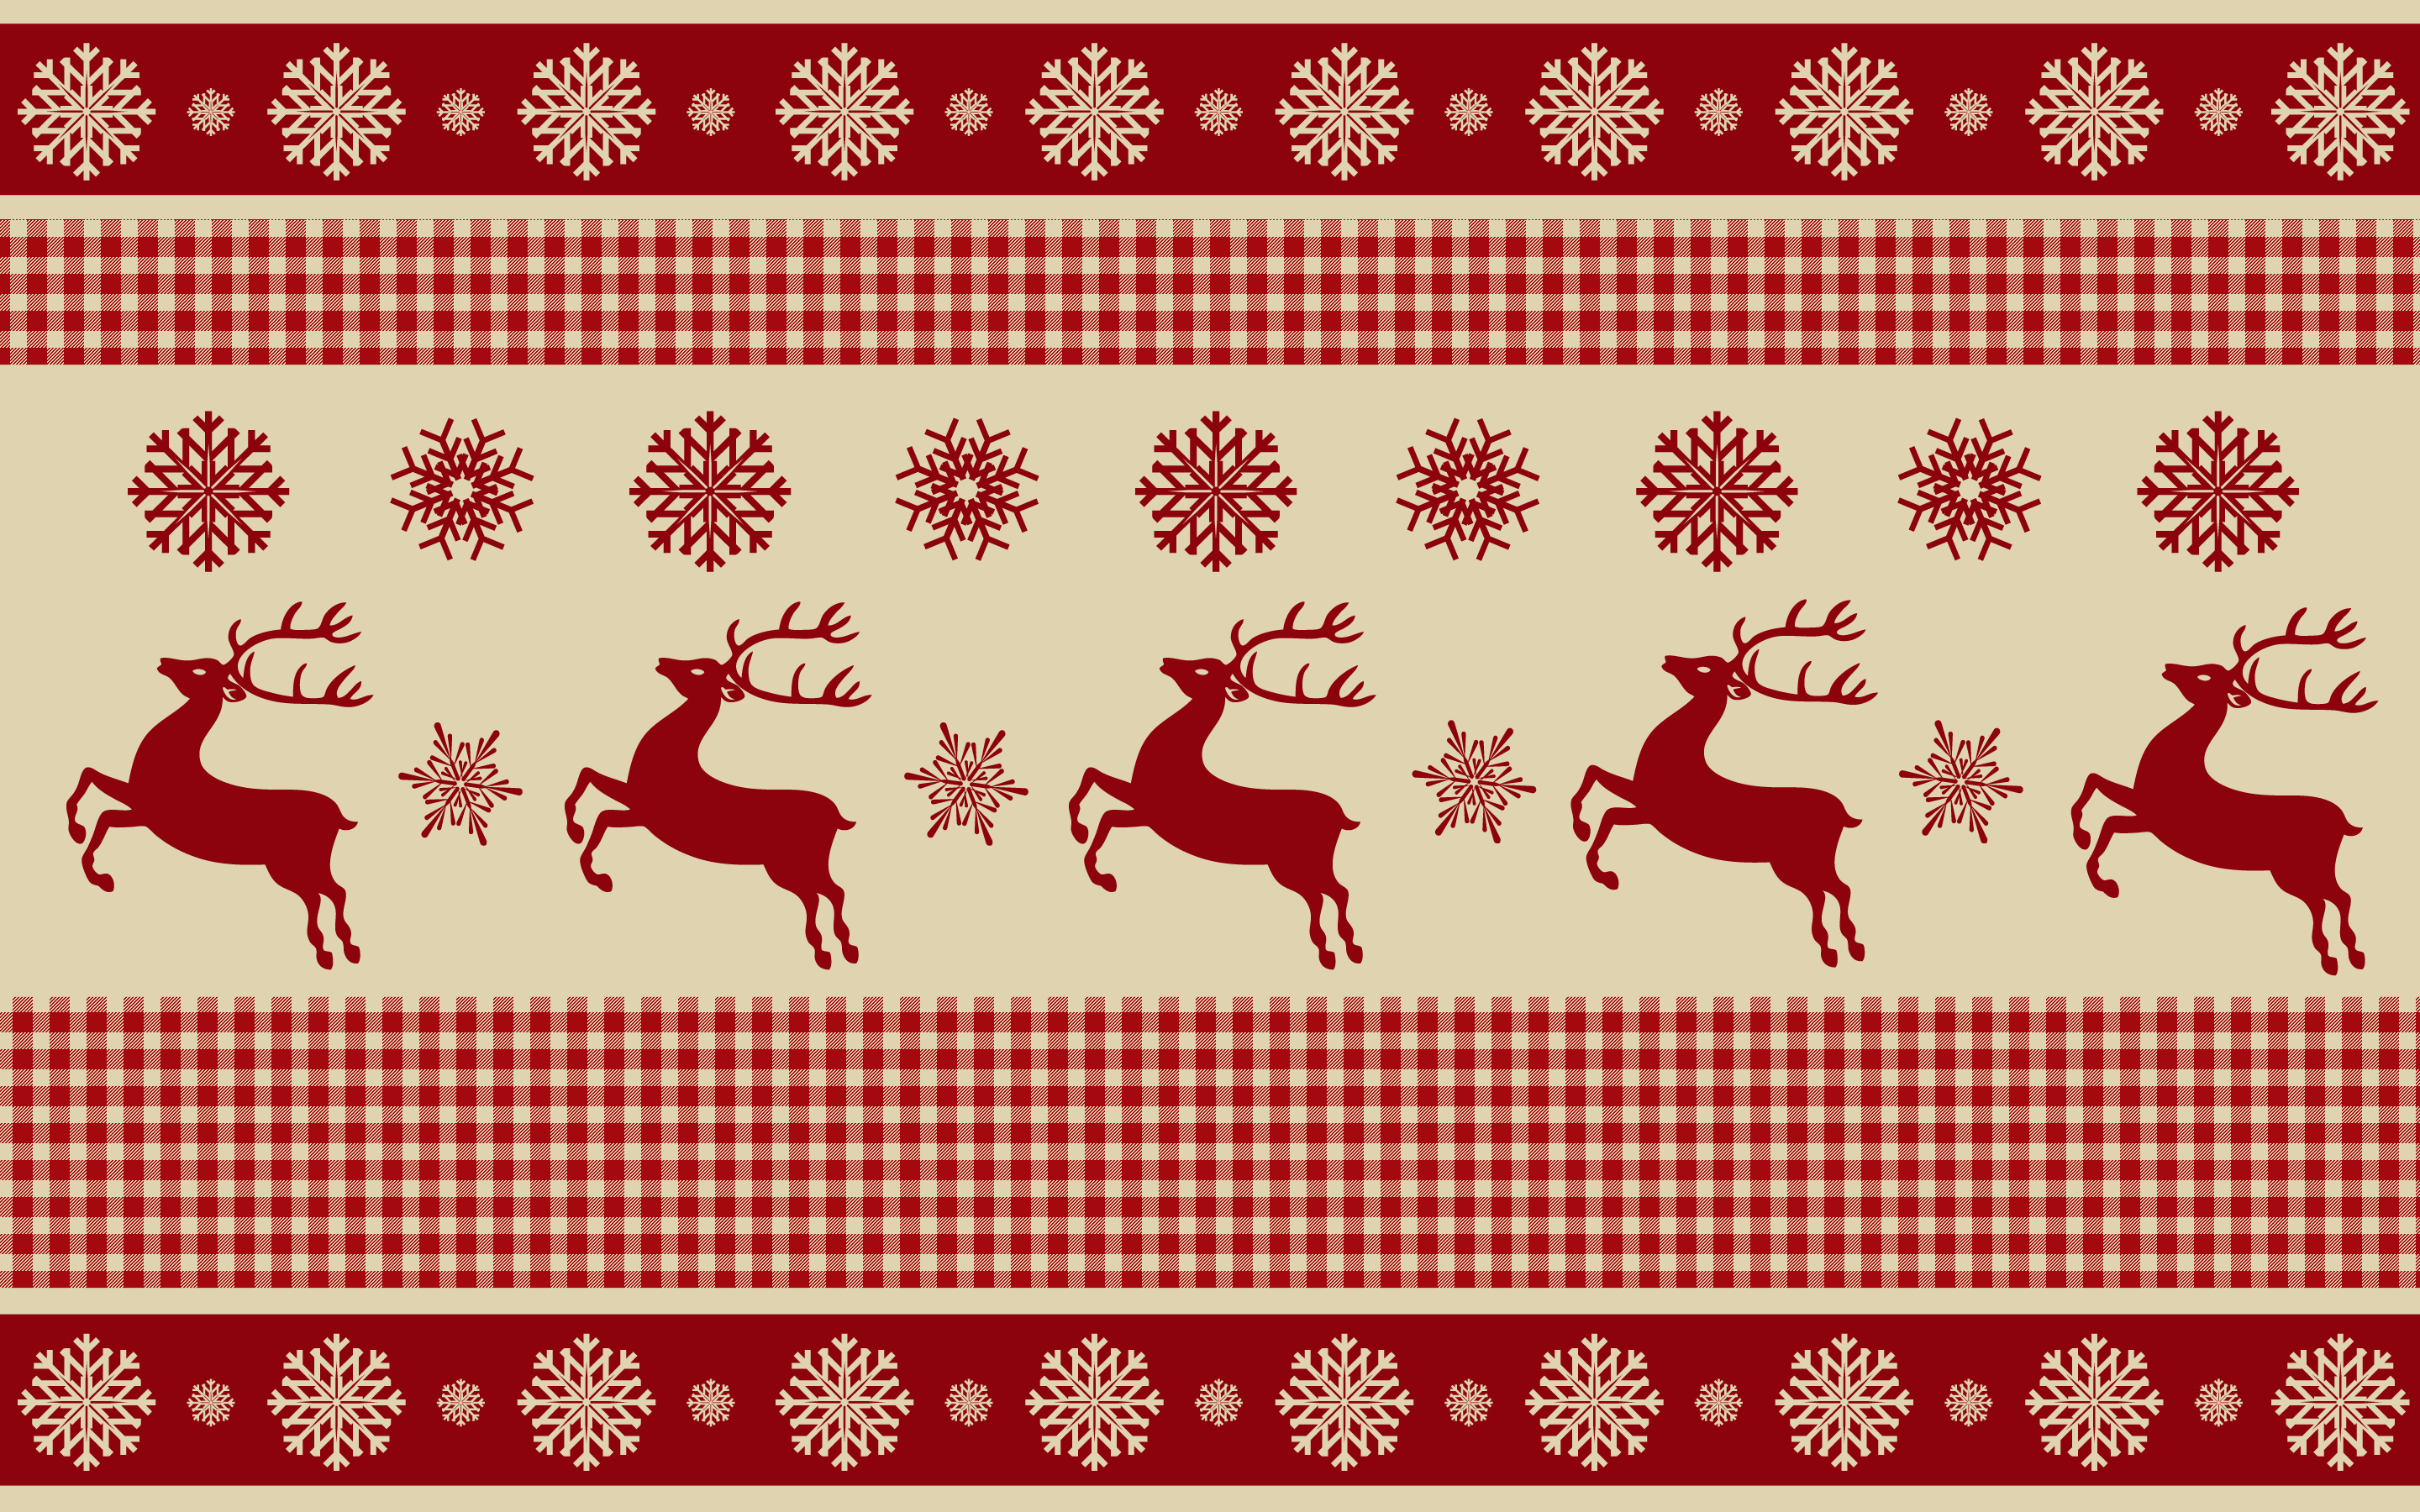 Chào đón mùa Giáng sinh ấm áp, chúng tôi muốn chia sẻ với bạn một hình nền áo len Giáng sinh xấu xí vô cùng đáng yêu và lãng mạn. Với những hình ảnh kết hợp giữa áo, bông tuyết và quả nho, bạn sẽ nhận được nhiều ý tưởng trong việc trang trí nhà cửa và tô điểm không khí lễ hội.